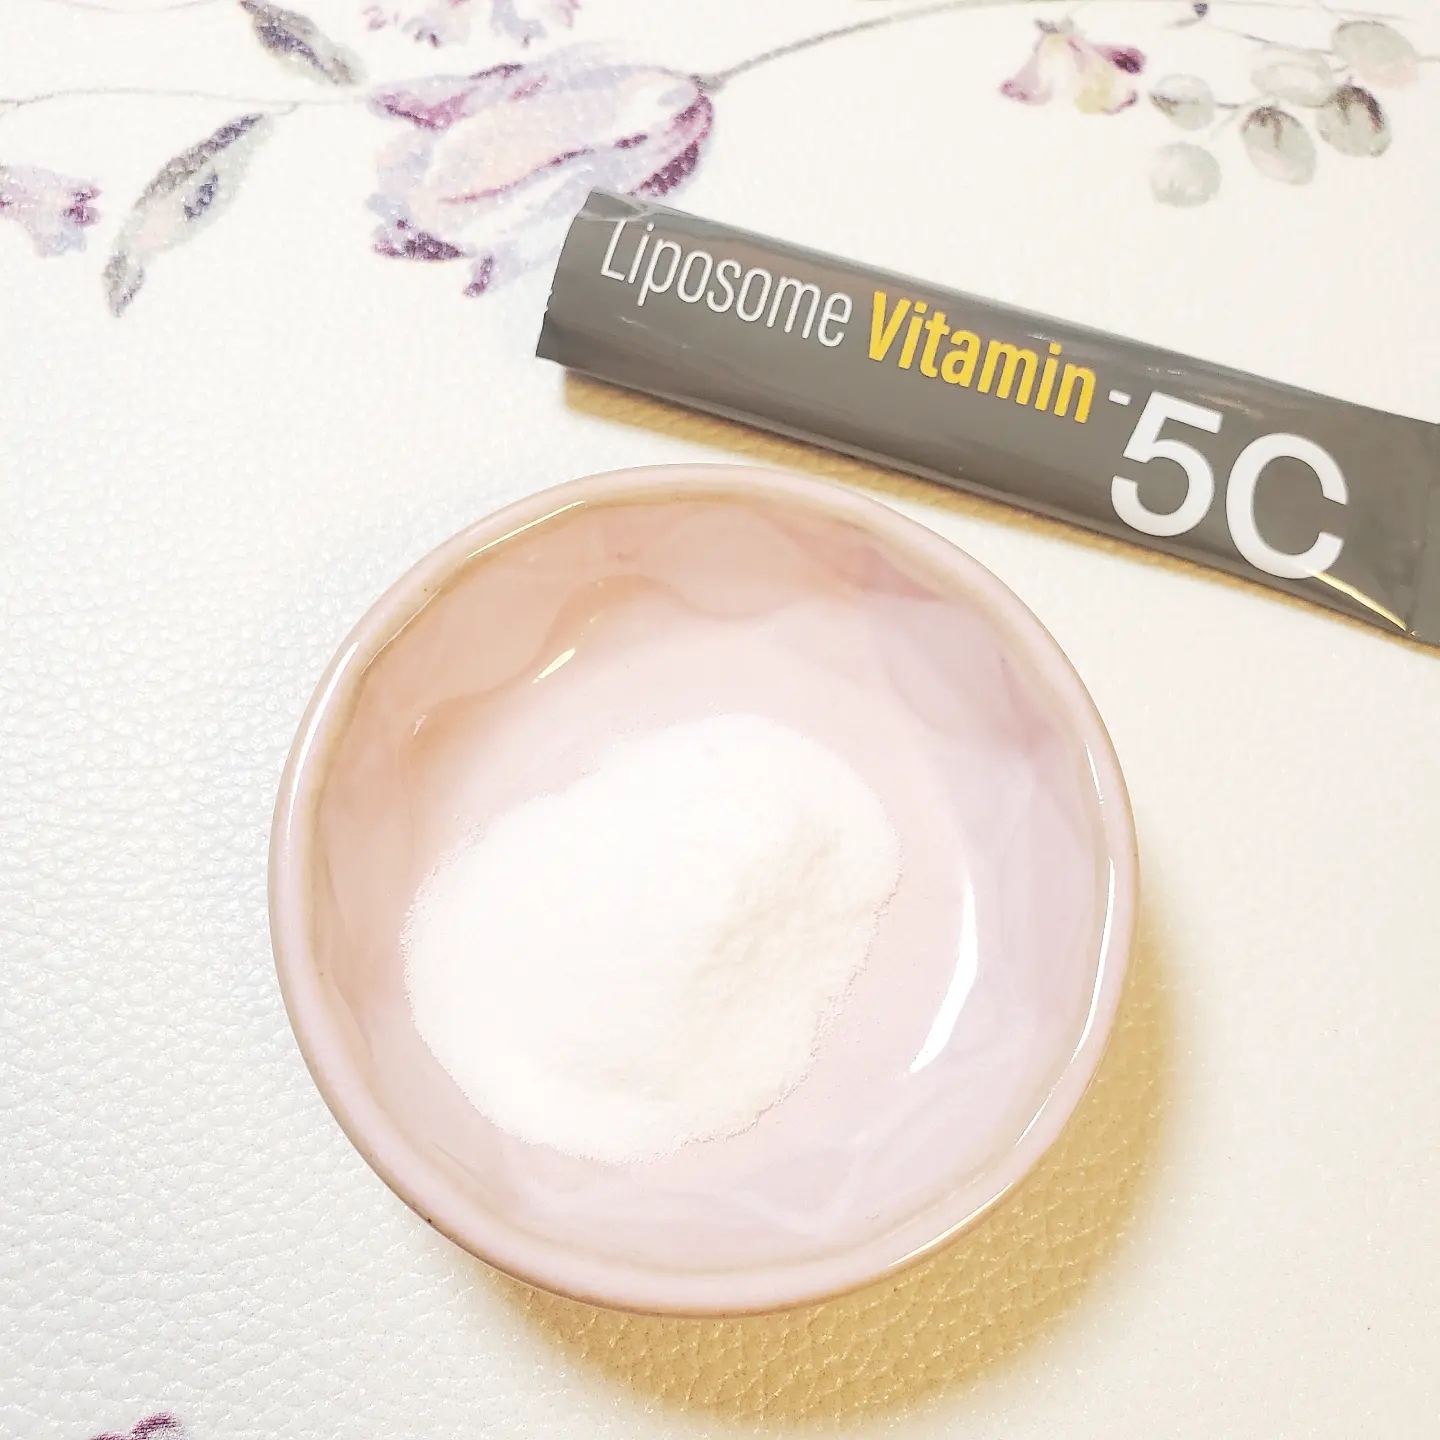 renaTerra(レナテーラ) Liposome Vitamin - 5Cの良い点・メリットに関するありんこさんの口コミ画像2